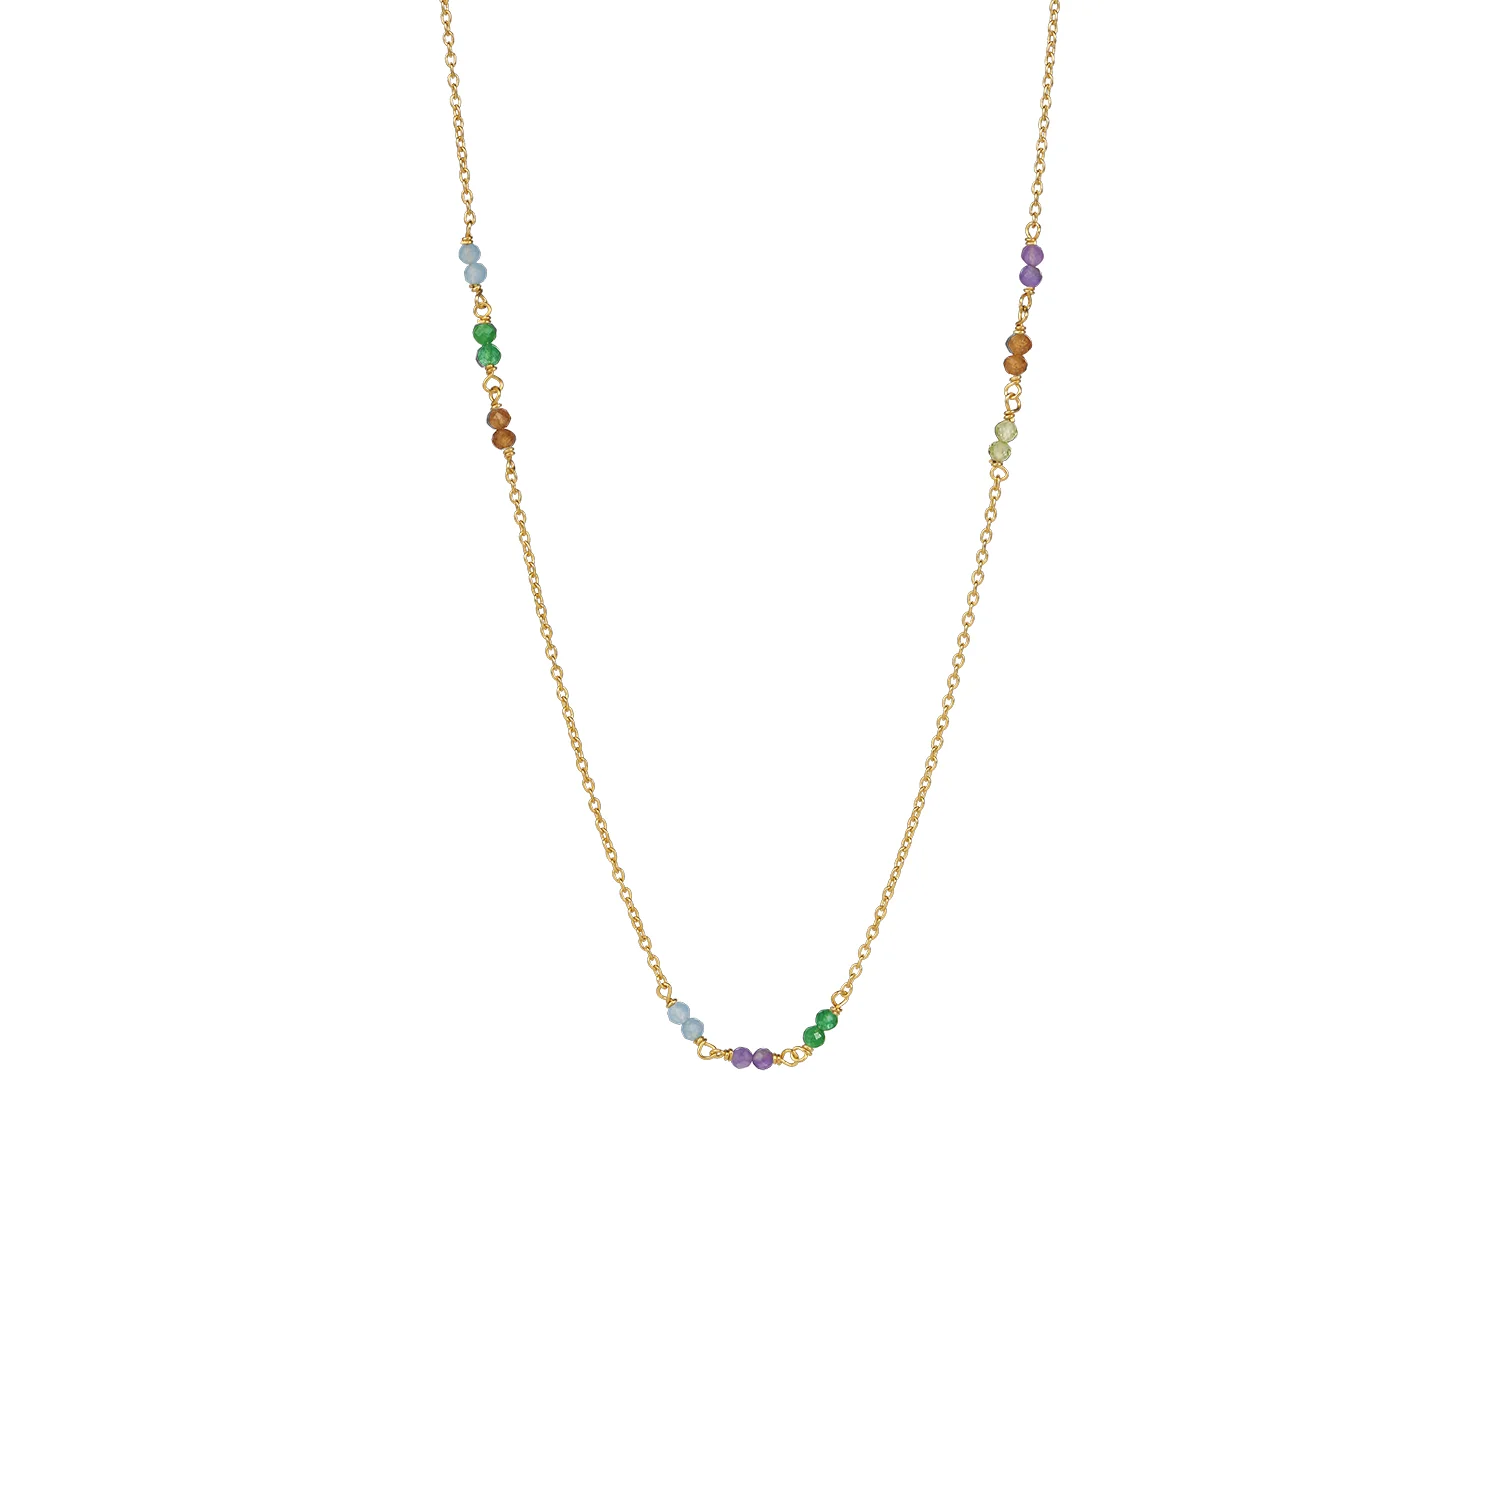 Eine zarte Goldkette besteht aus kleinen, mehrfarbigen Perlen, die gleichmäßig entlang der Kette verteilt sind. Die Perlen sind in Blau-, Grün-, Lila-, Orange- und klaren Farbtönen erhältlich.